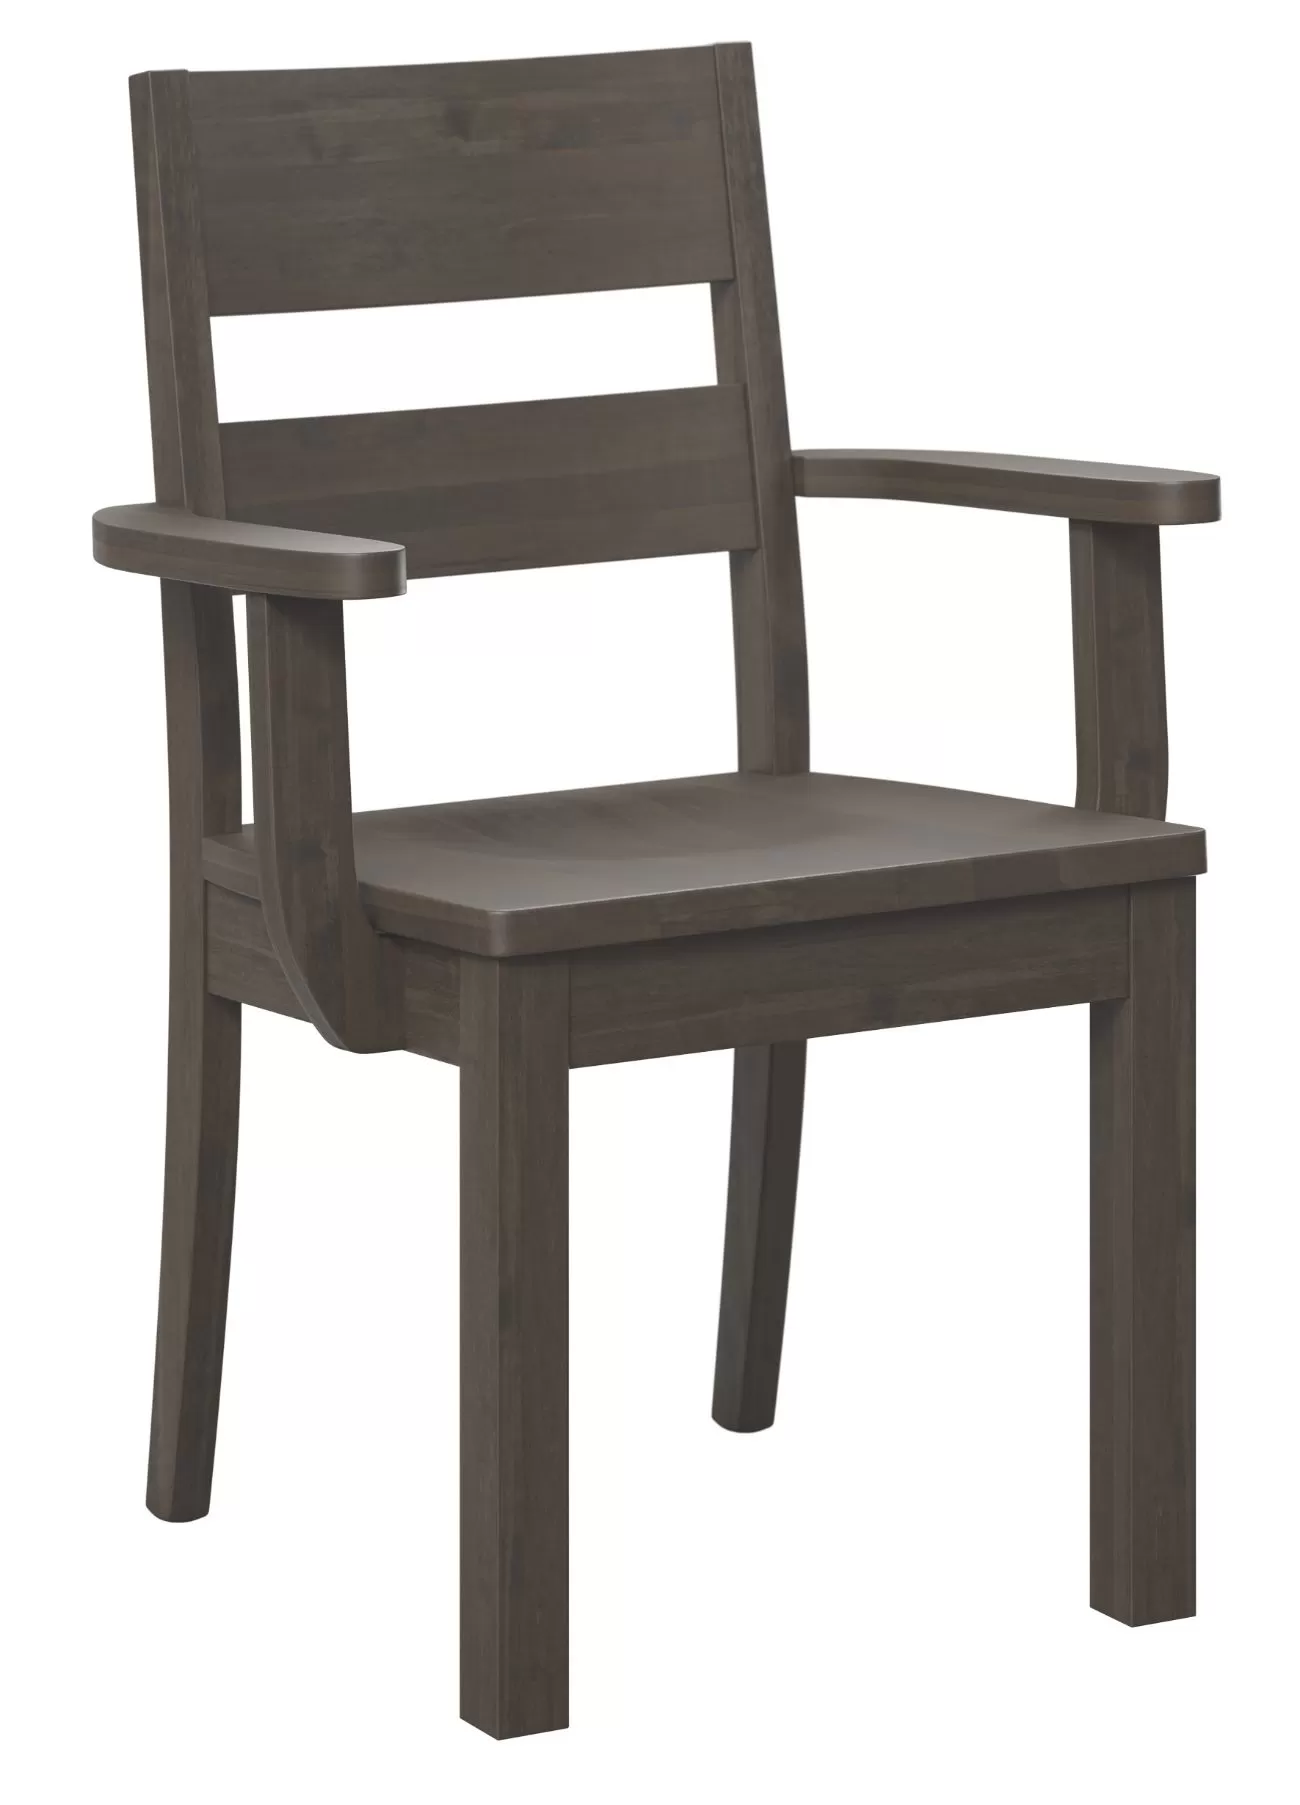 Avon arm chair